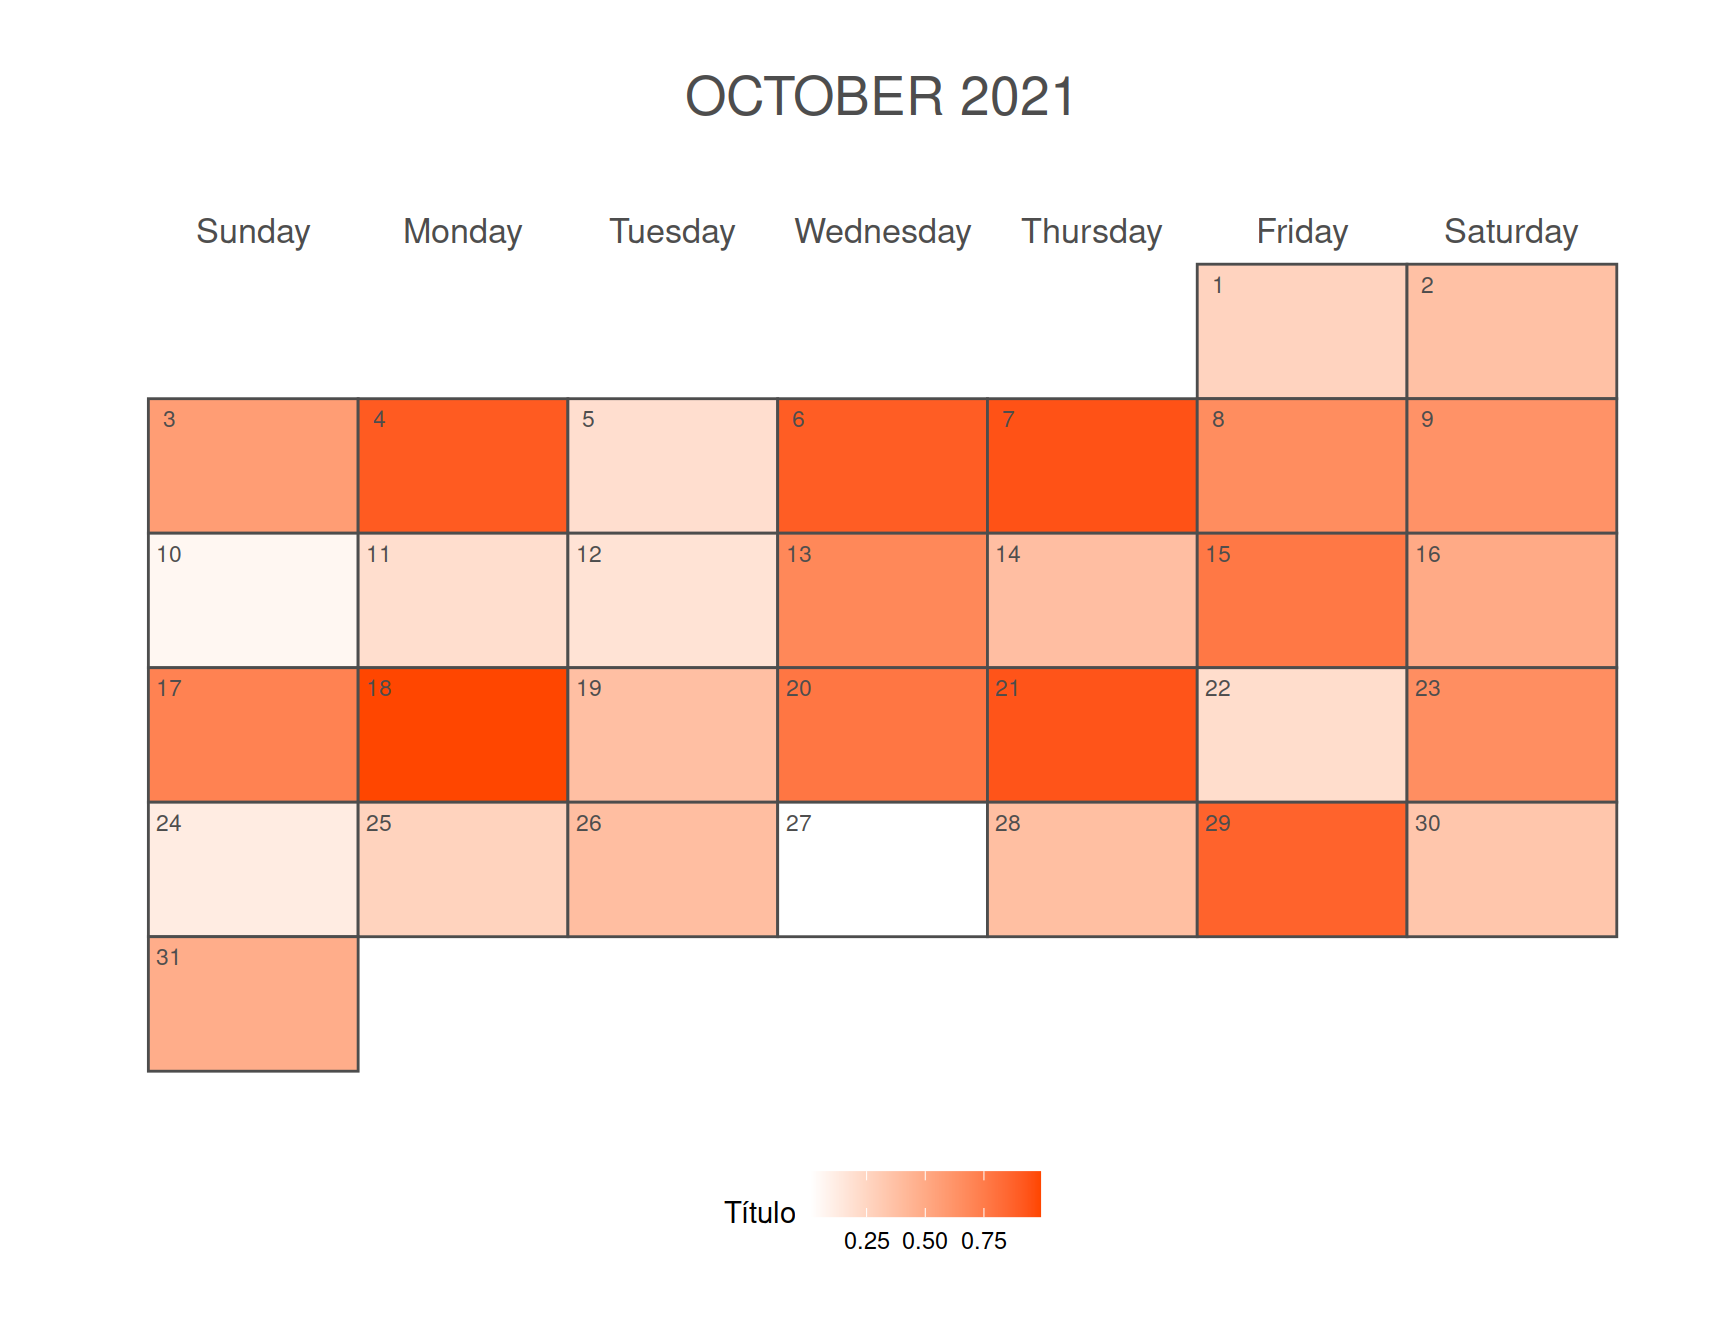 Calendario mensual como mapa de calor en ggplot2